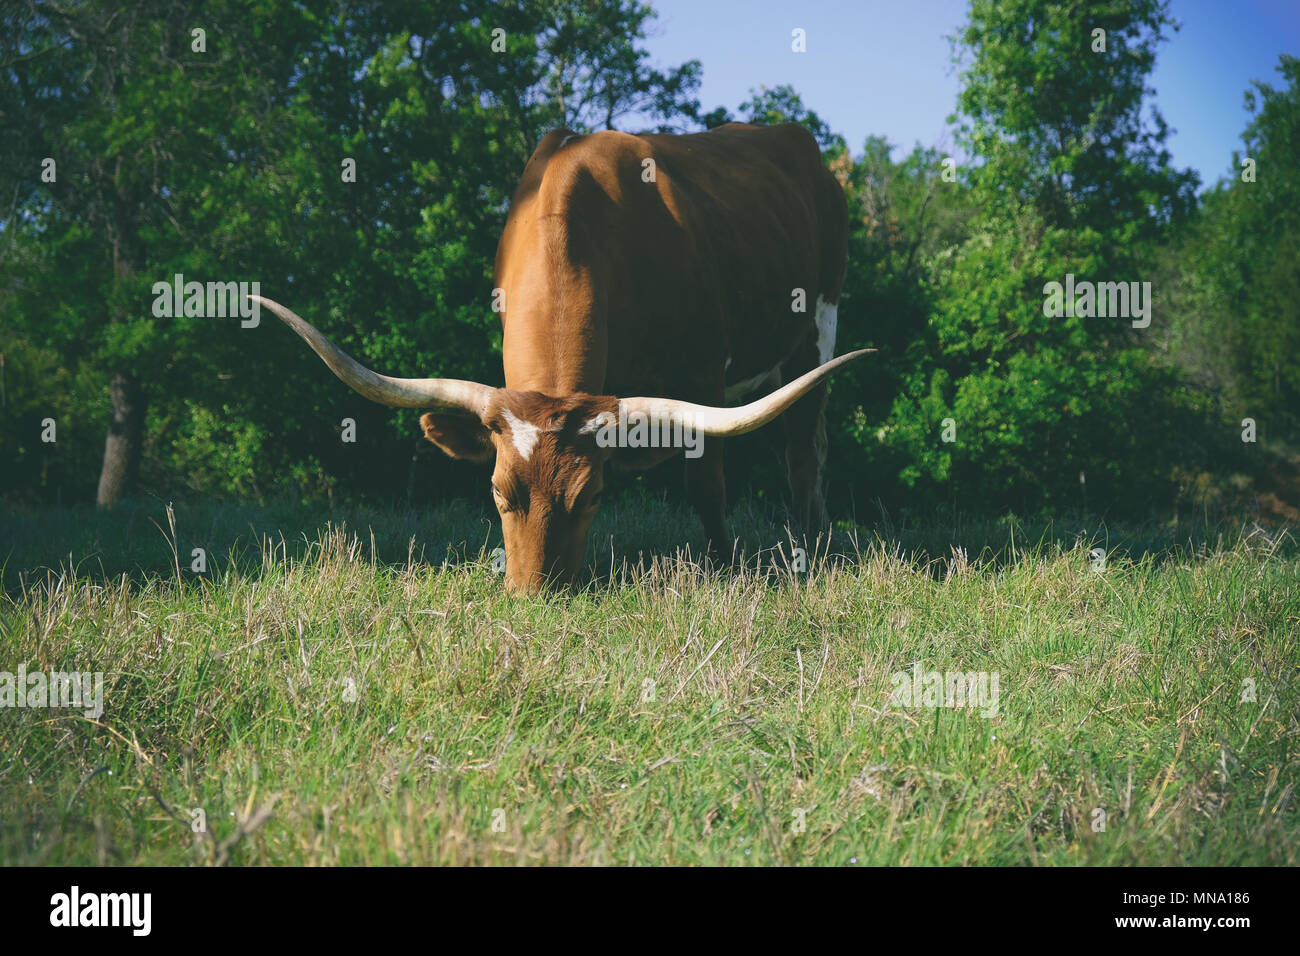 Große Texas Longhorn Kuh in Hof weide Weiden mit frischem Sommer Gras. Bauernhof Tiere essen und gesund. Stockfoto